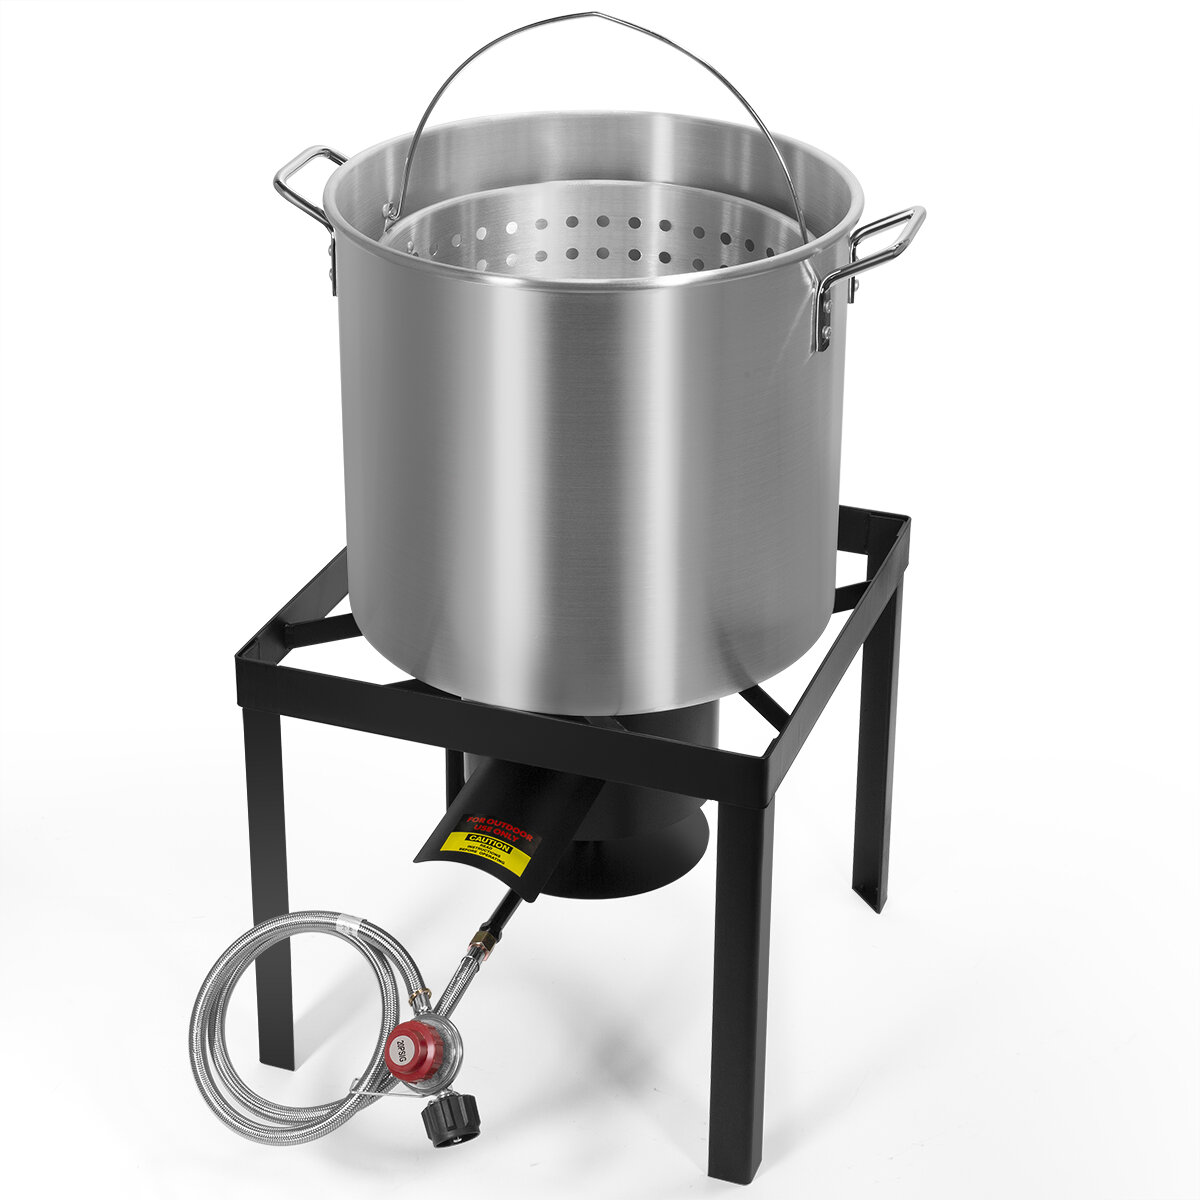 https://assets.wfcdn.com/im/12179162/compr-r85/1110/111020359/aluminum-steamer-fair-clam-bake-pot-1-burner-propane-turkey-fryer.jpg